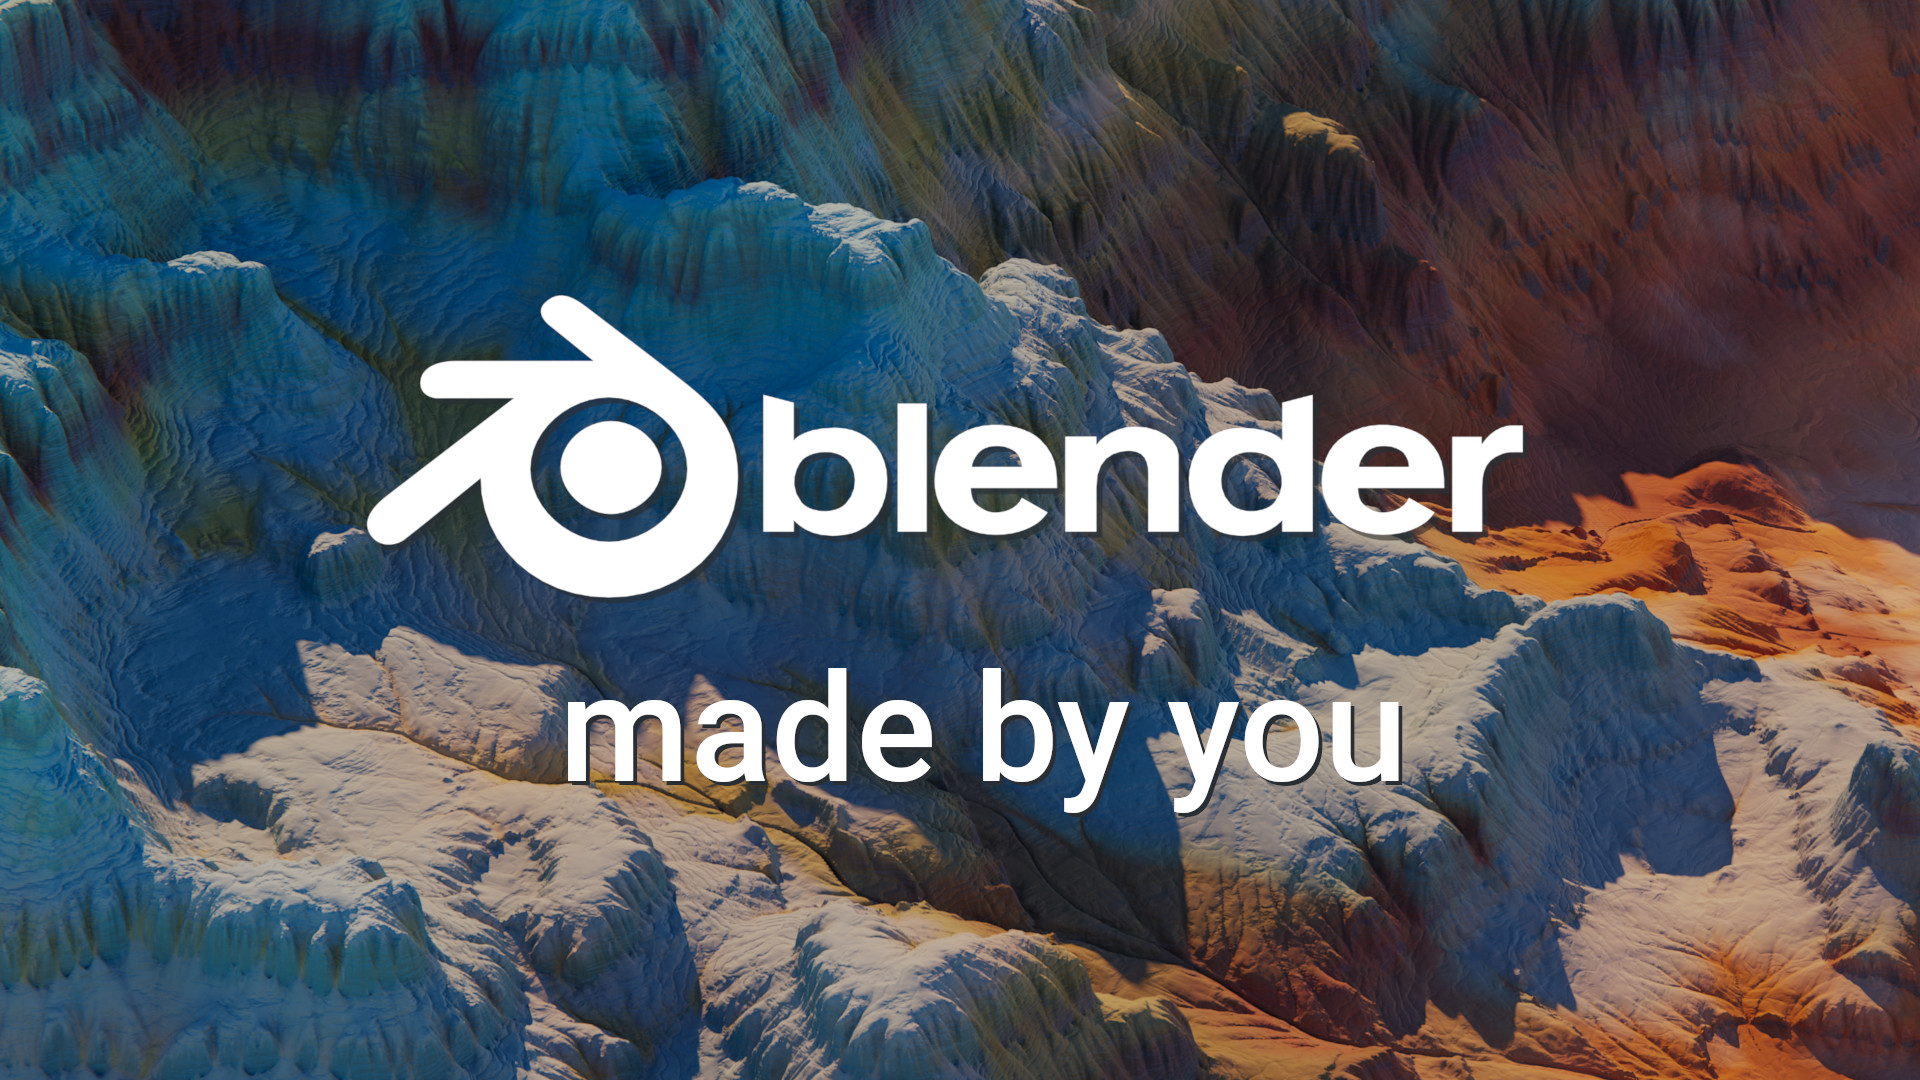 2.80 — blender.org